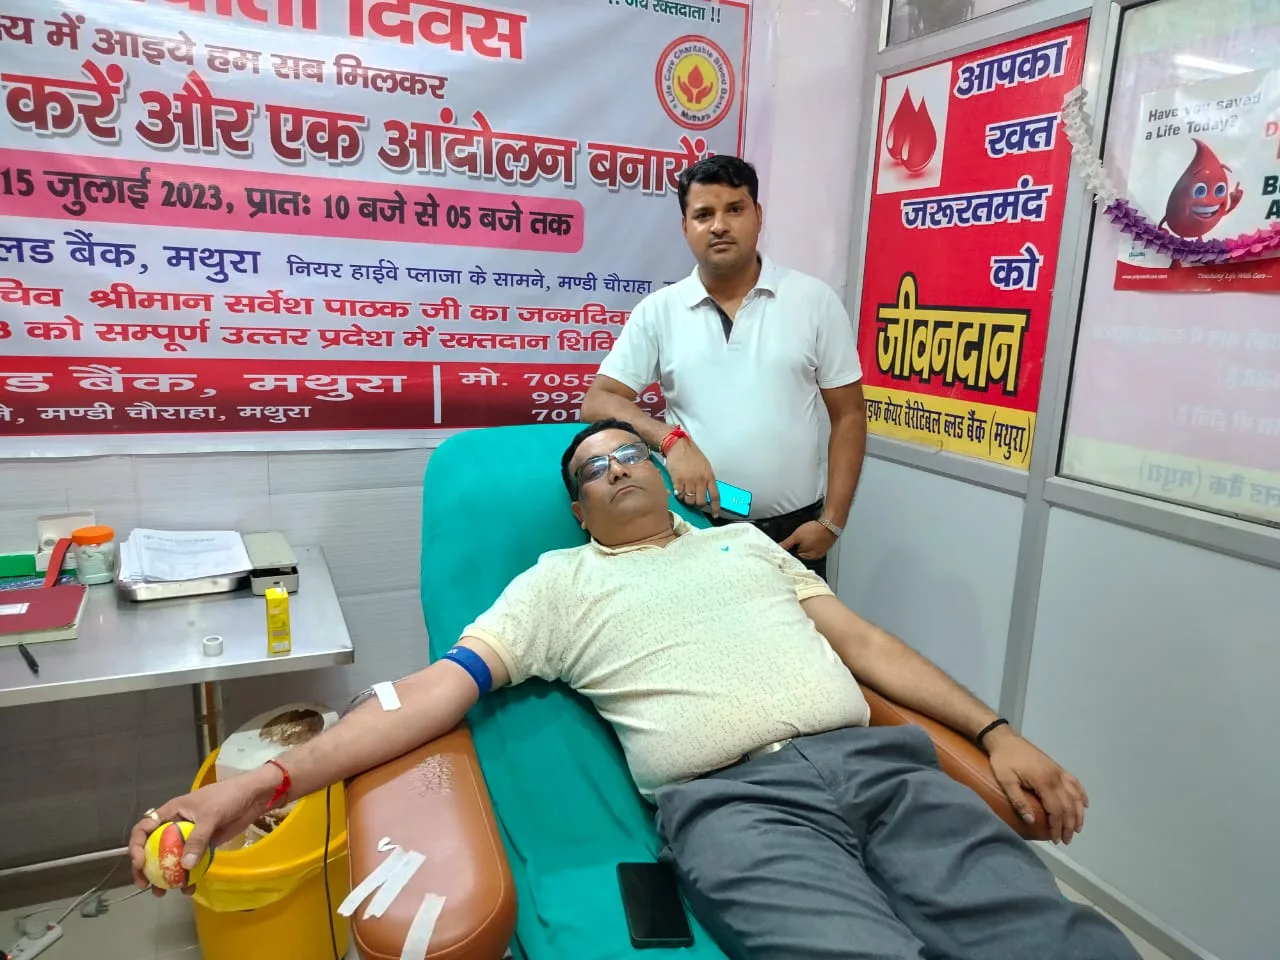 दूसरे की जिंदगी बचाने के लिए अपना खून दिया दान | New India Times